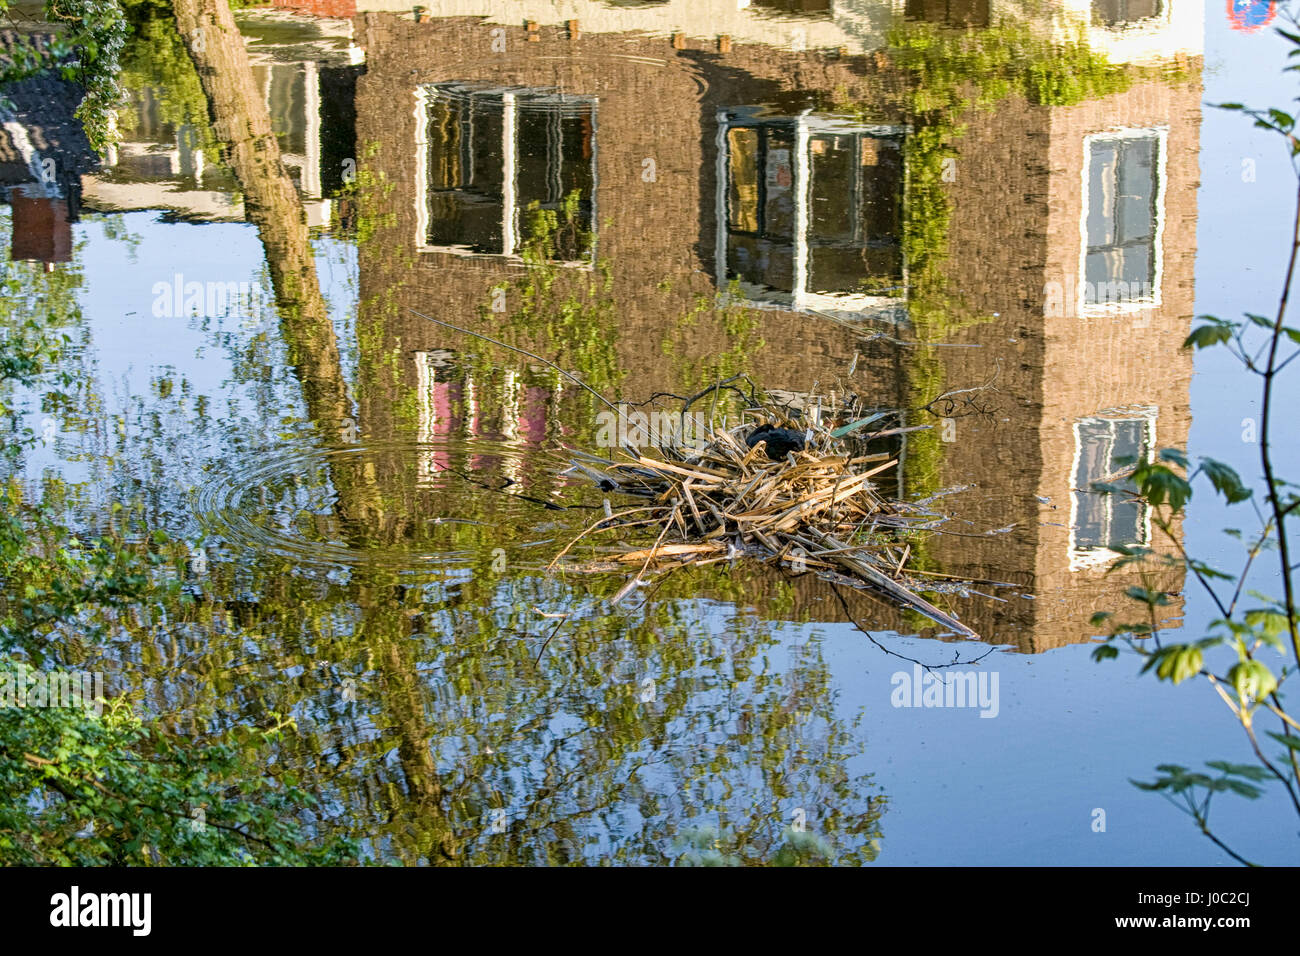 Foulque sur son nid au milieu du canal avec la réflexion de maisons Banque D'Images